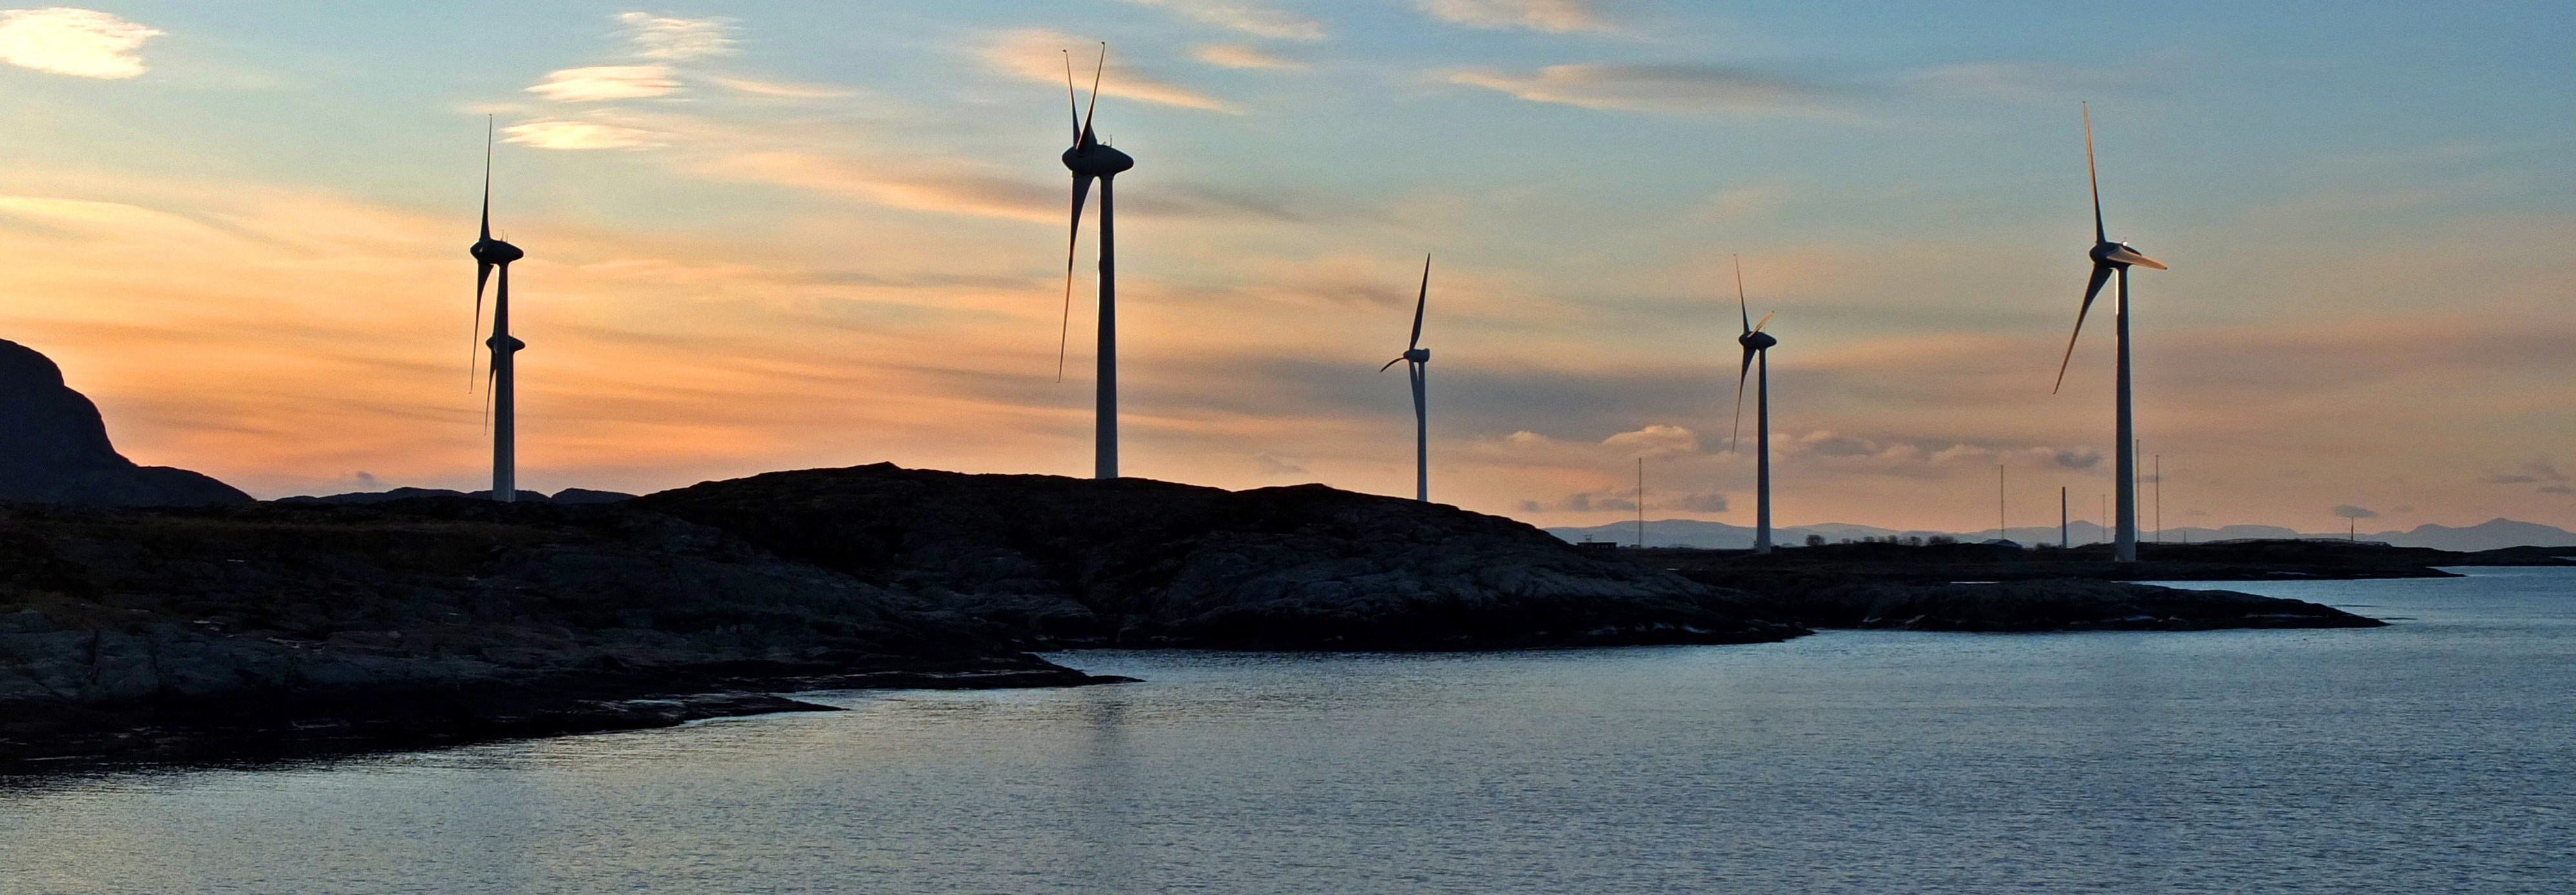 valsneset vindmøllepark_wikimedia